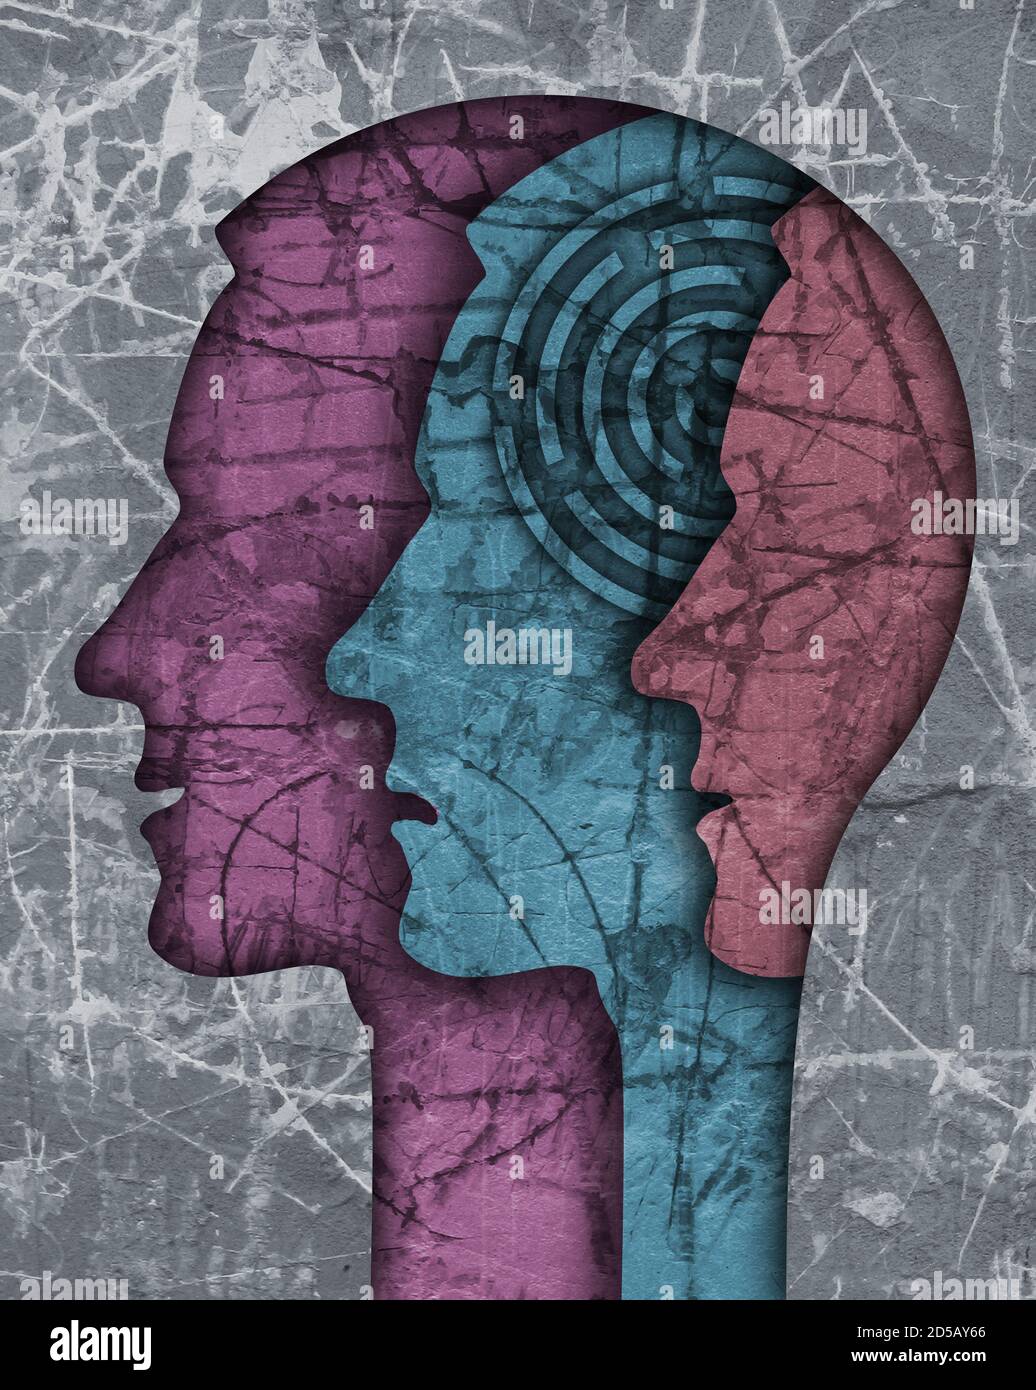 Schizophrenie männlichen Kopf Silhouette. Illustration mit drei stilisierten männlichen Köpfen auf Grunge-Textur symbolisiert Schizophrenie, Depression. Stockfoto